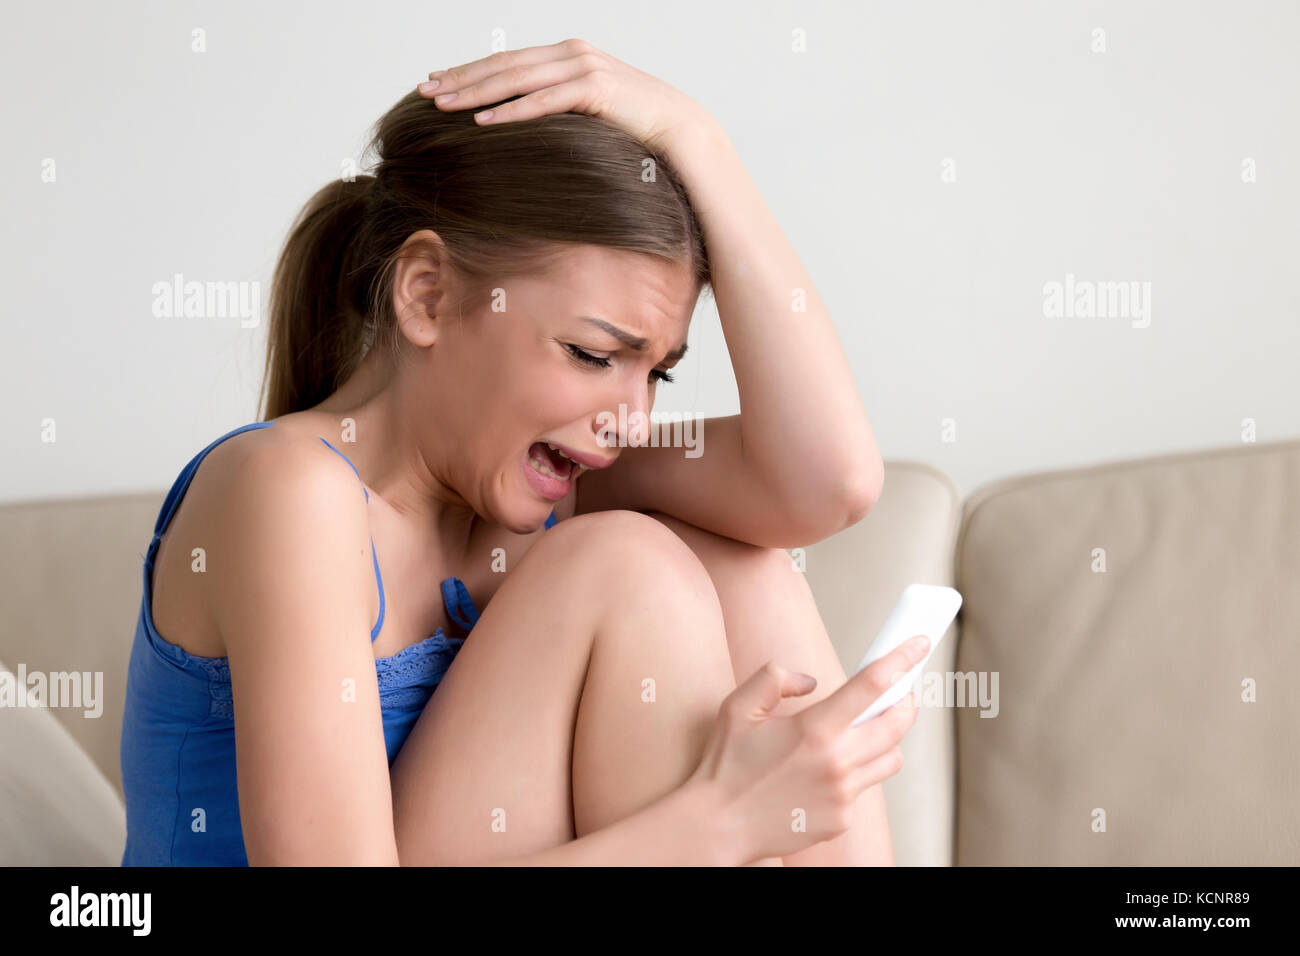 Schluchzend jugendlich Mädchen Messaging auf Telefon, Weinen gedrückt junge Dame hält Telefon sitzen auf einem Sofa, frustrierte Frau in Tränen auf Zelle Gefühl rejec Stockfoto